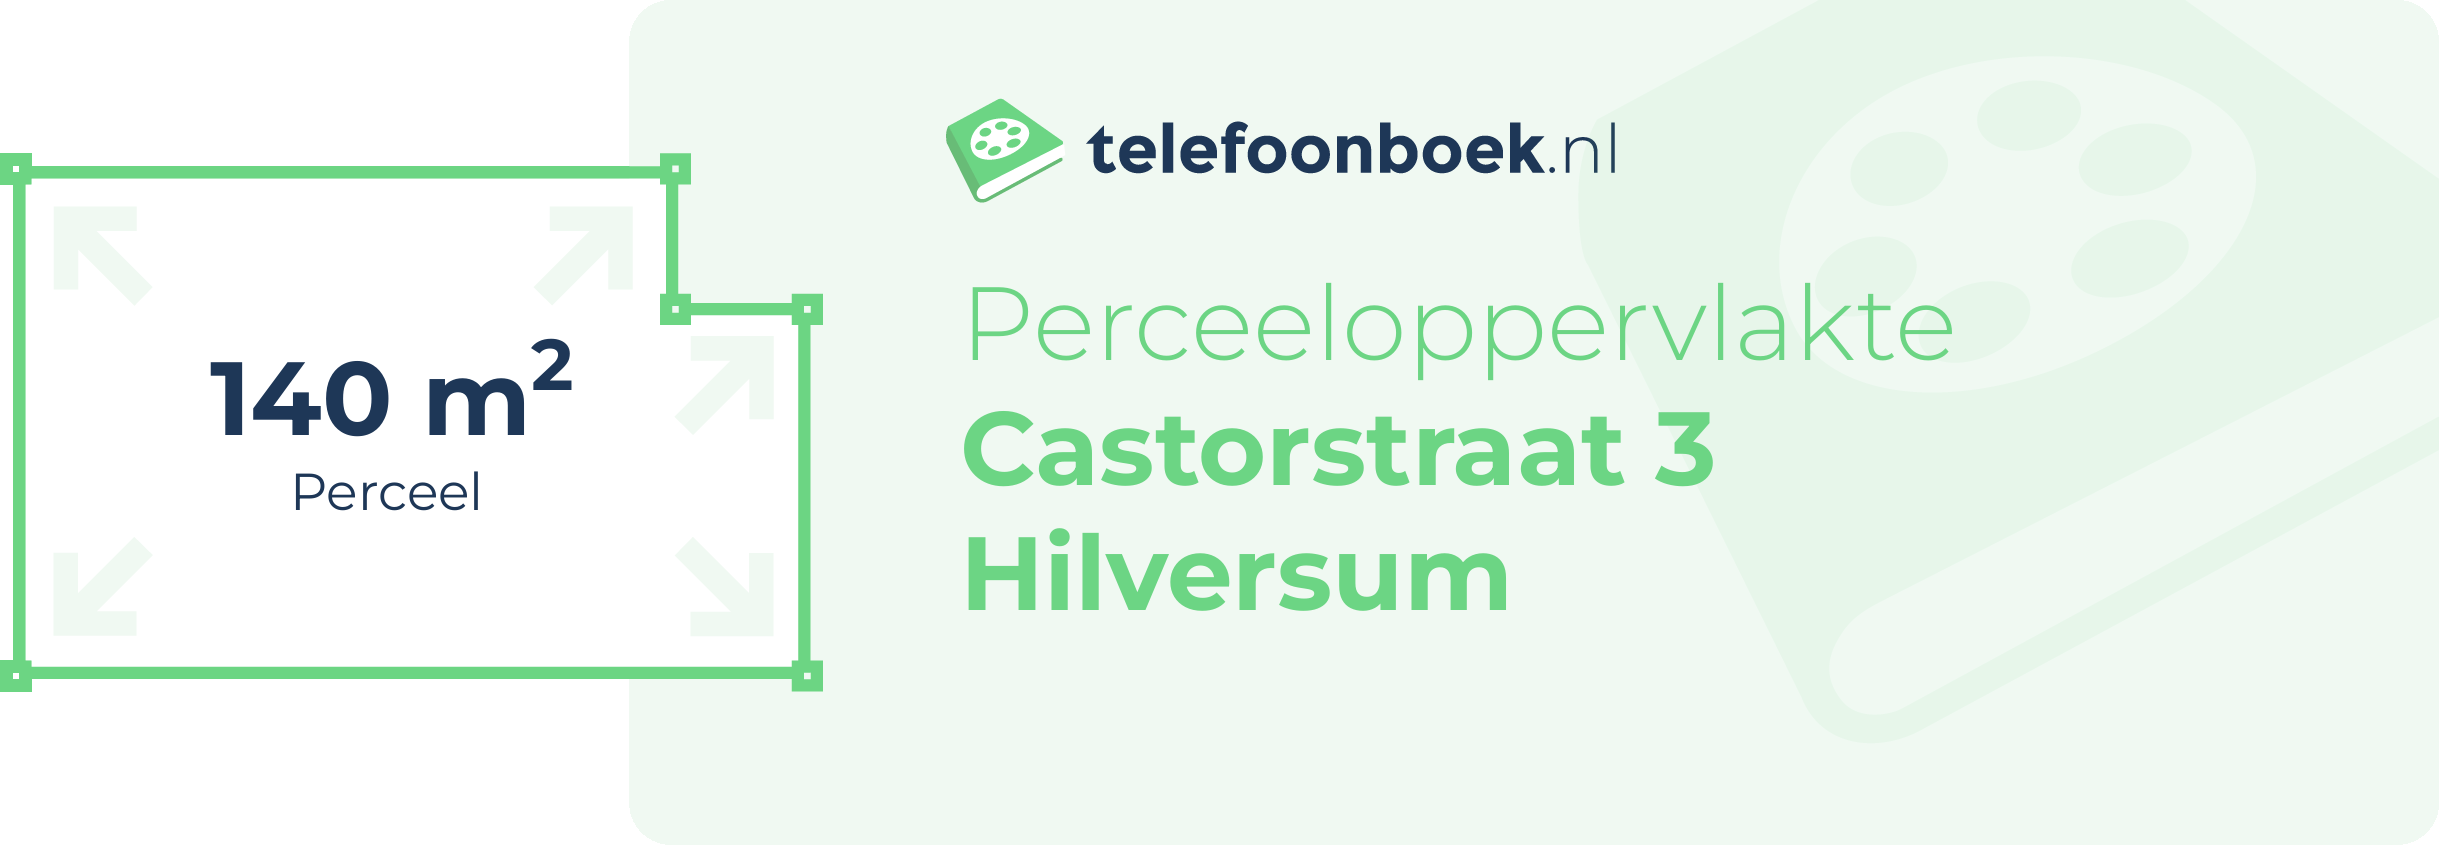 Perceeloppervlakte Castorstraat 3 Hilversum